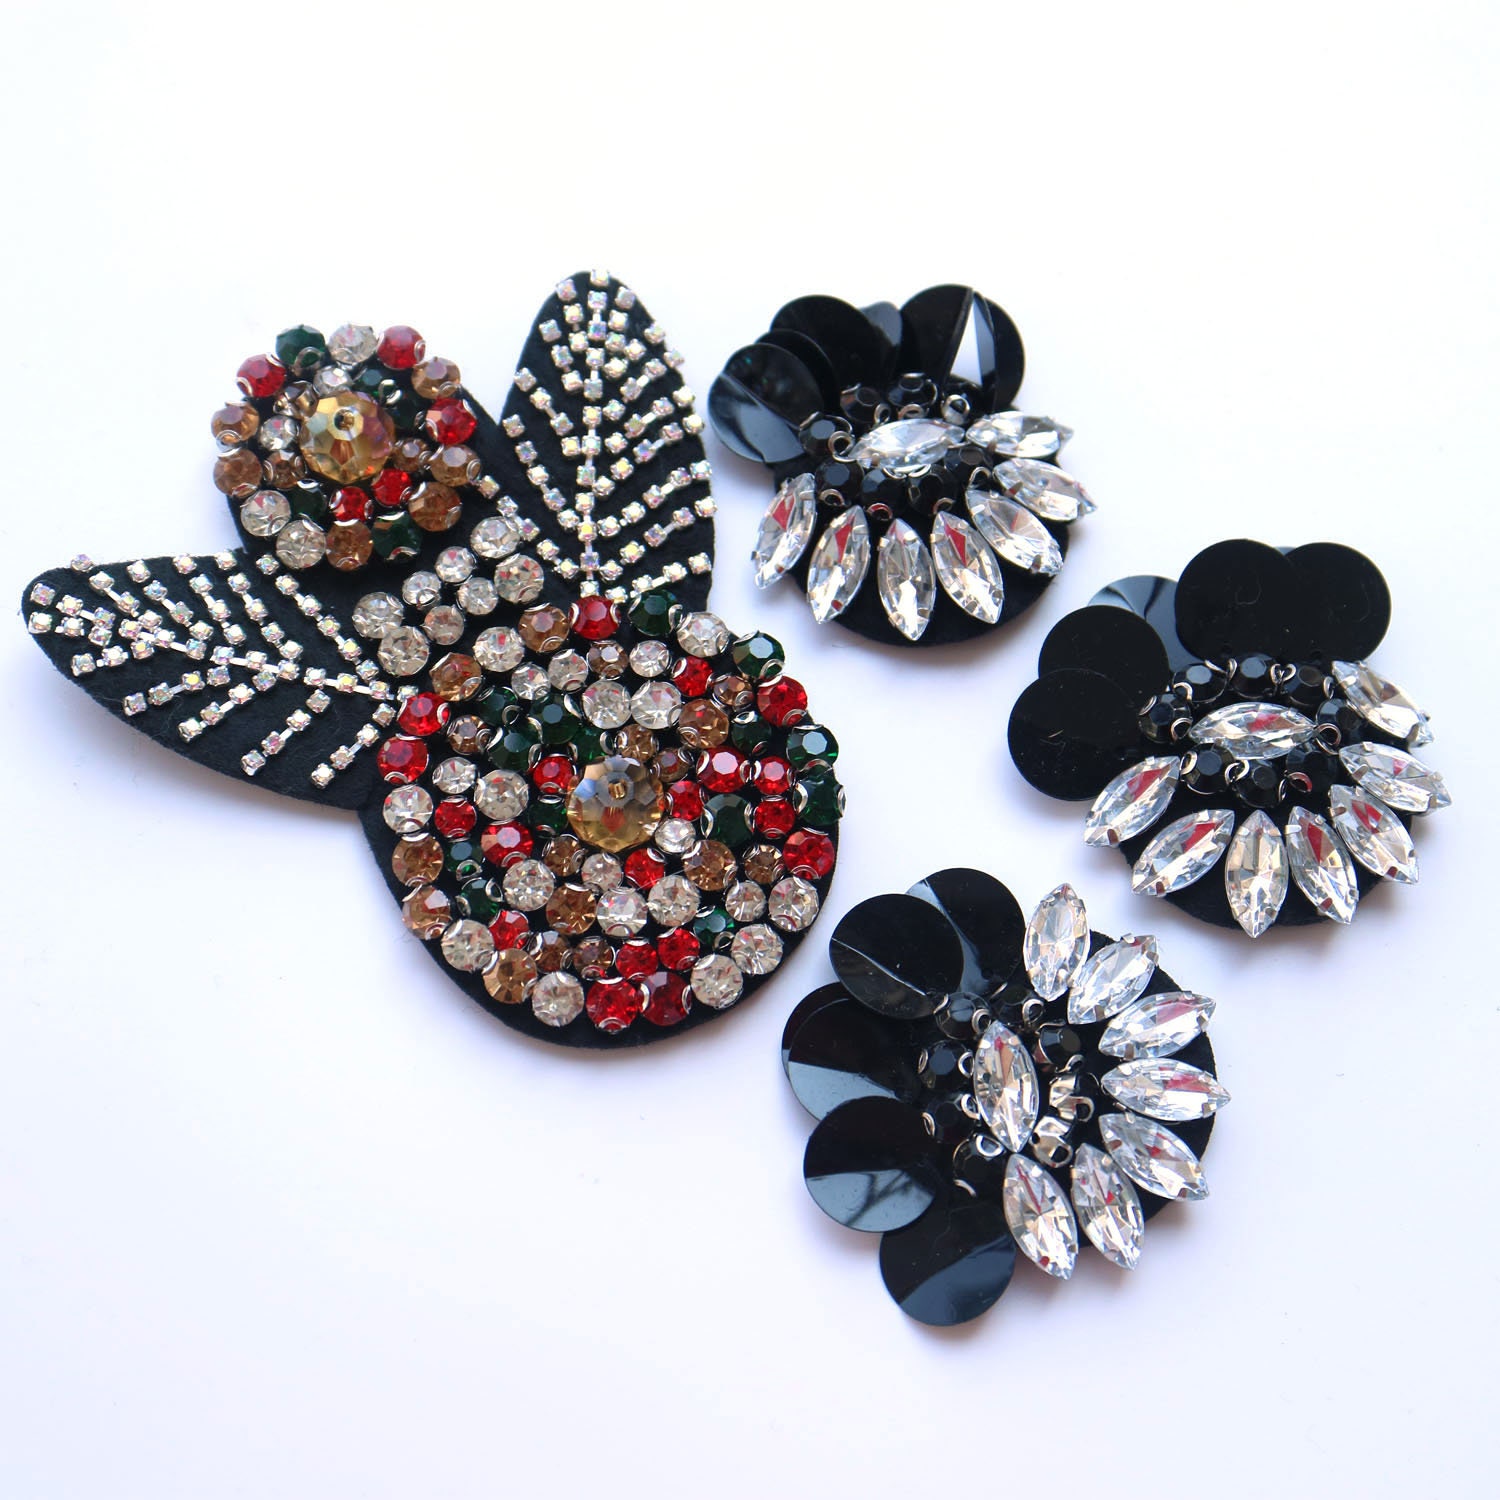 Perlenblumen Patches Für Kleidung 3D Handarbeit Strass Perlen Dekoration Aufnäher Diy Parches Stickapplikation von okahome